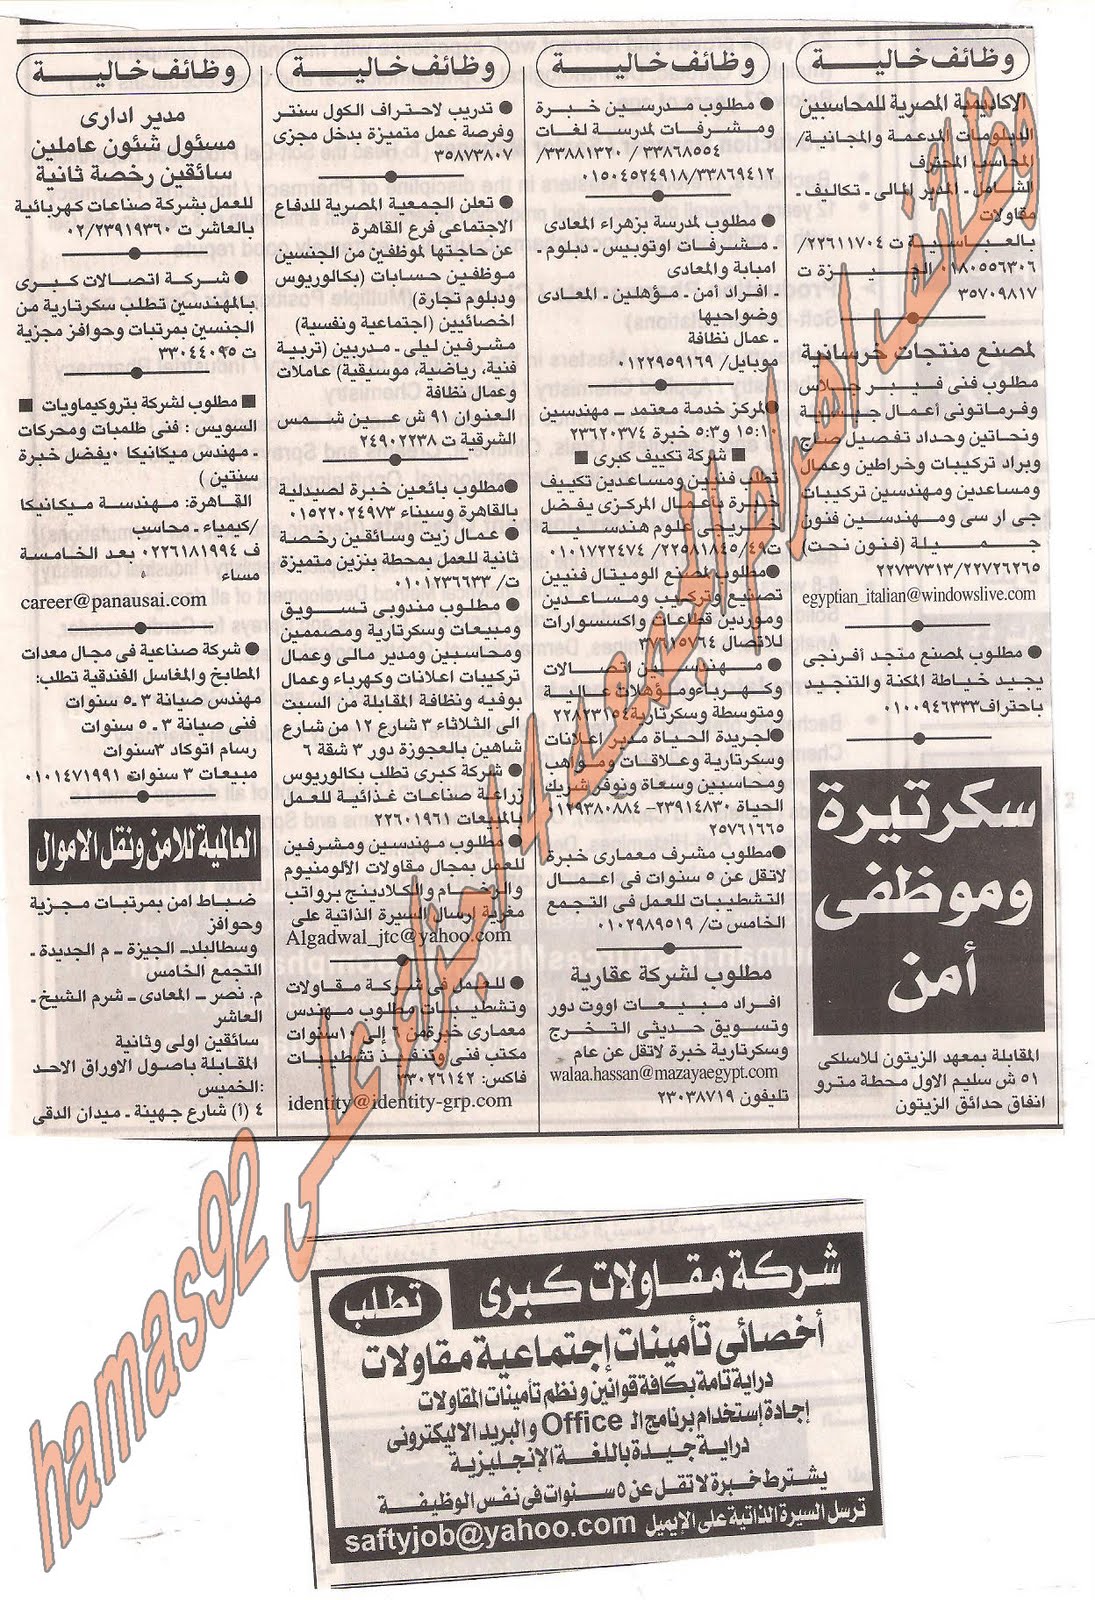 وظائف جريدة الاهرام الجمعة 12 اغسطس 2011 Picture+009